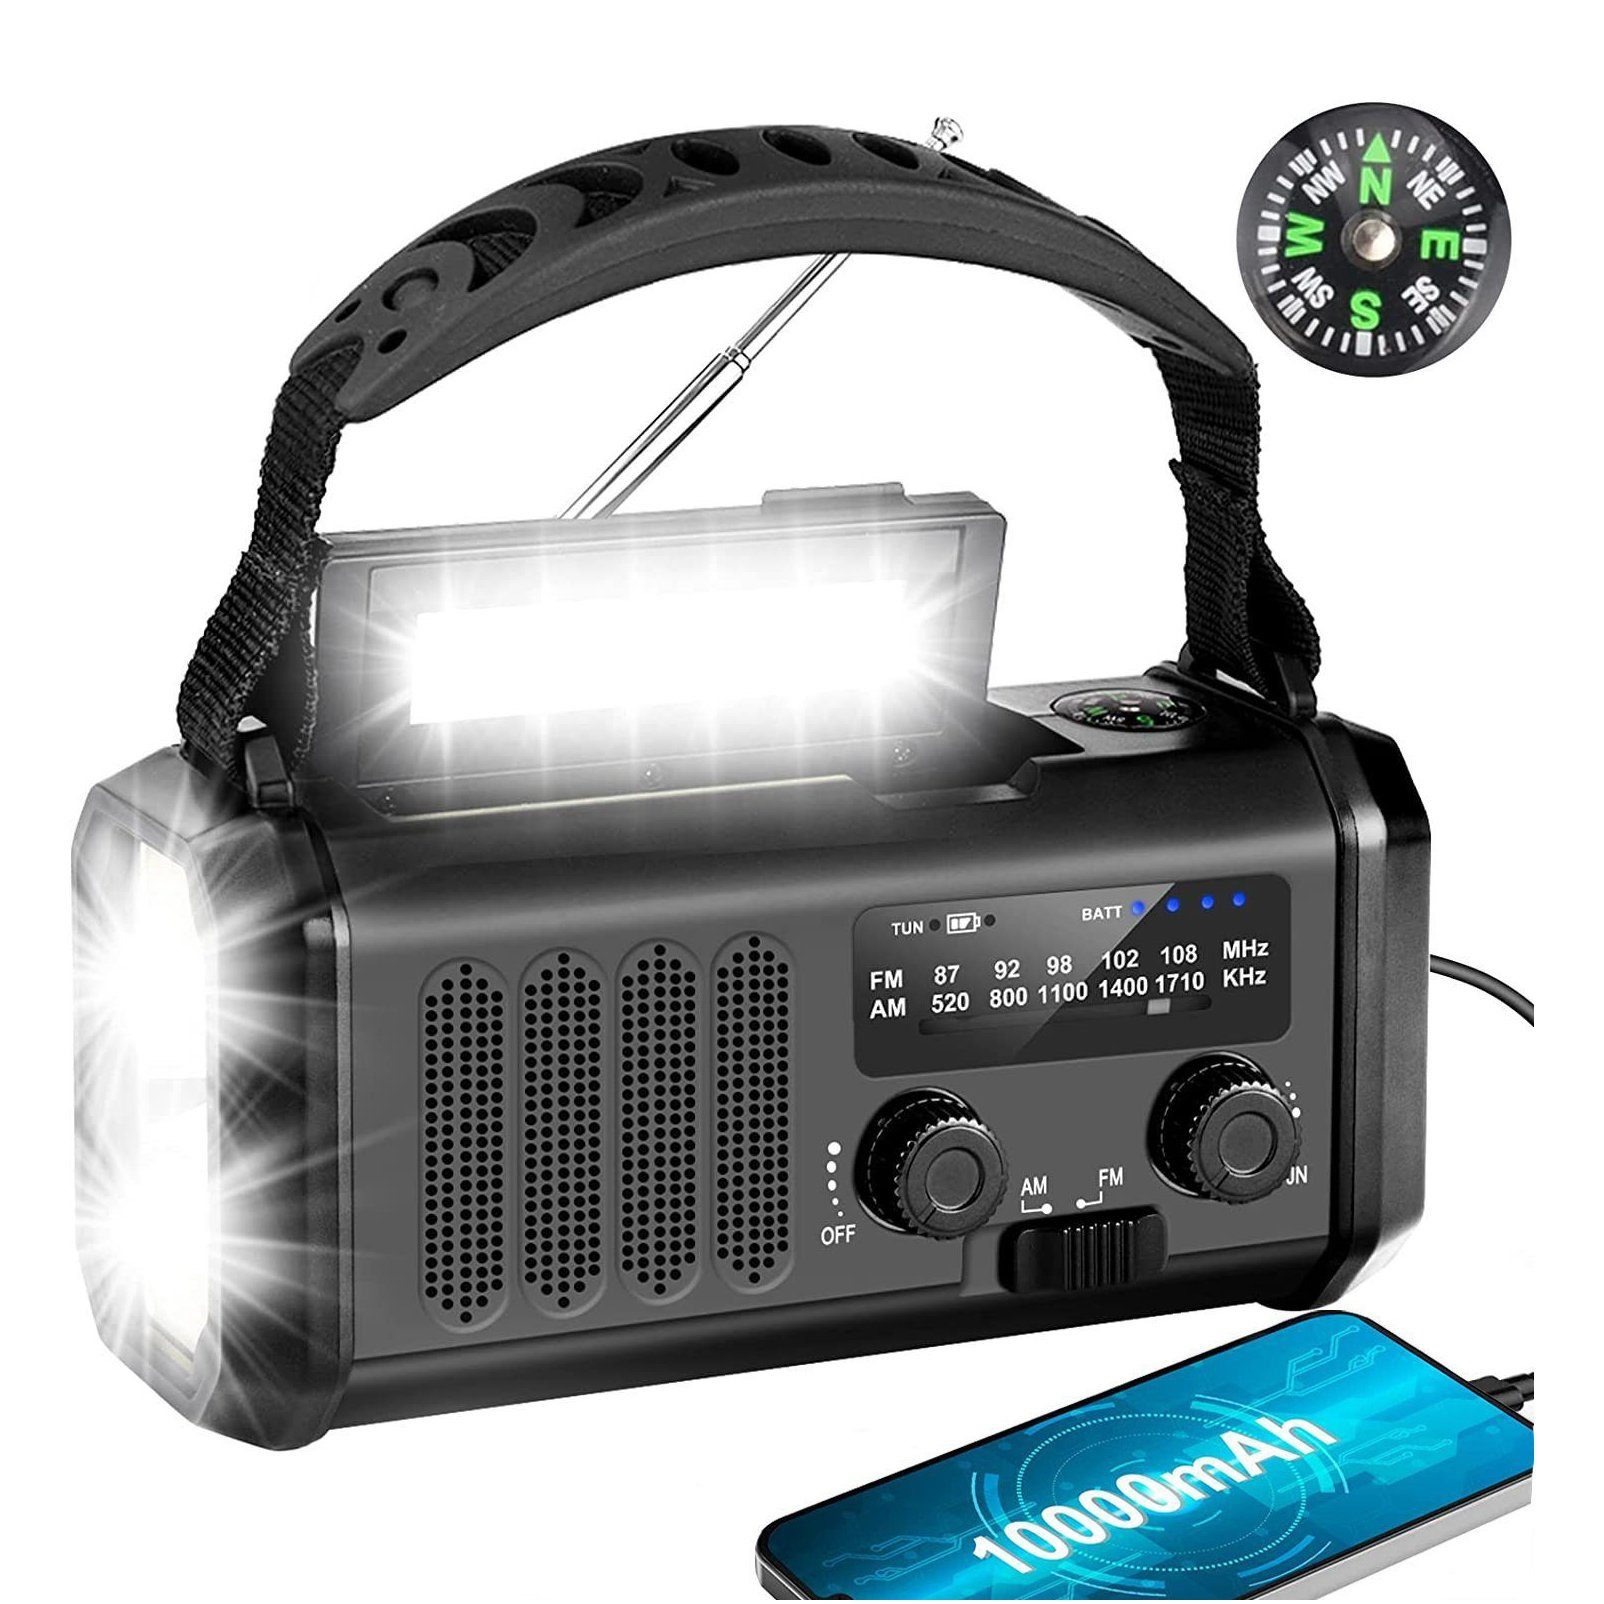 Mutoy Radio, 10000mAh Kurbelradio, AM/FM Tragbar Notfallradio, Solar Radio Digitalradio (DAB) (3 Modi LED Taschenlampe, LED Leselampe, SOS Alarm, Kompass)